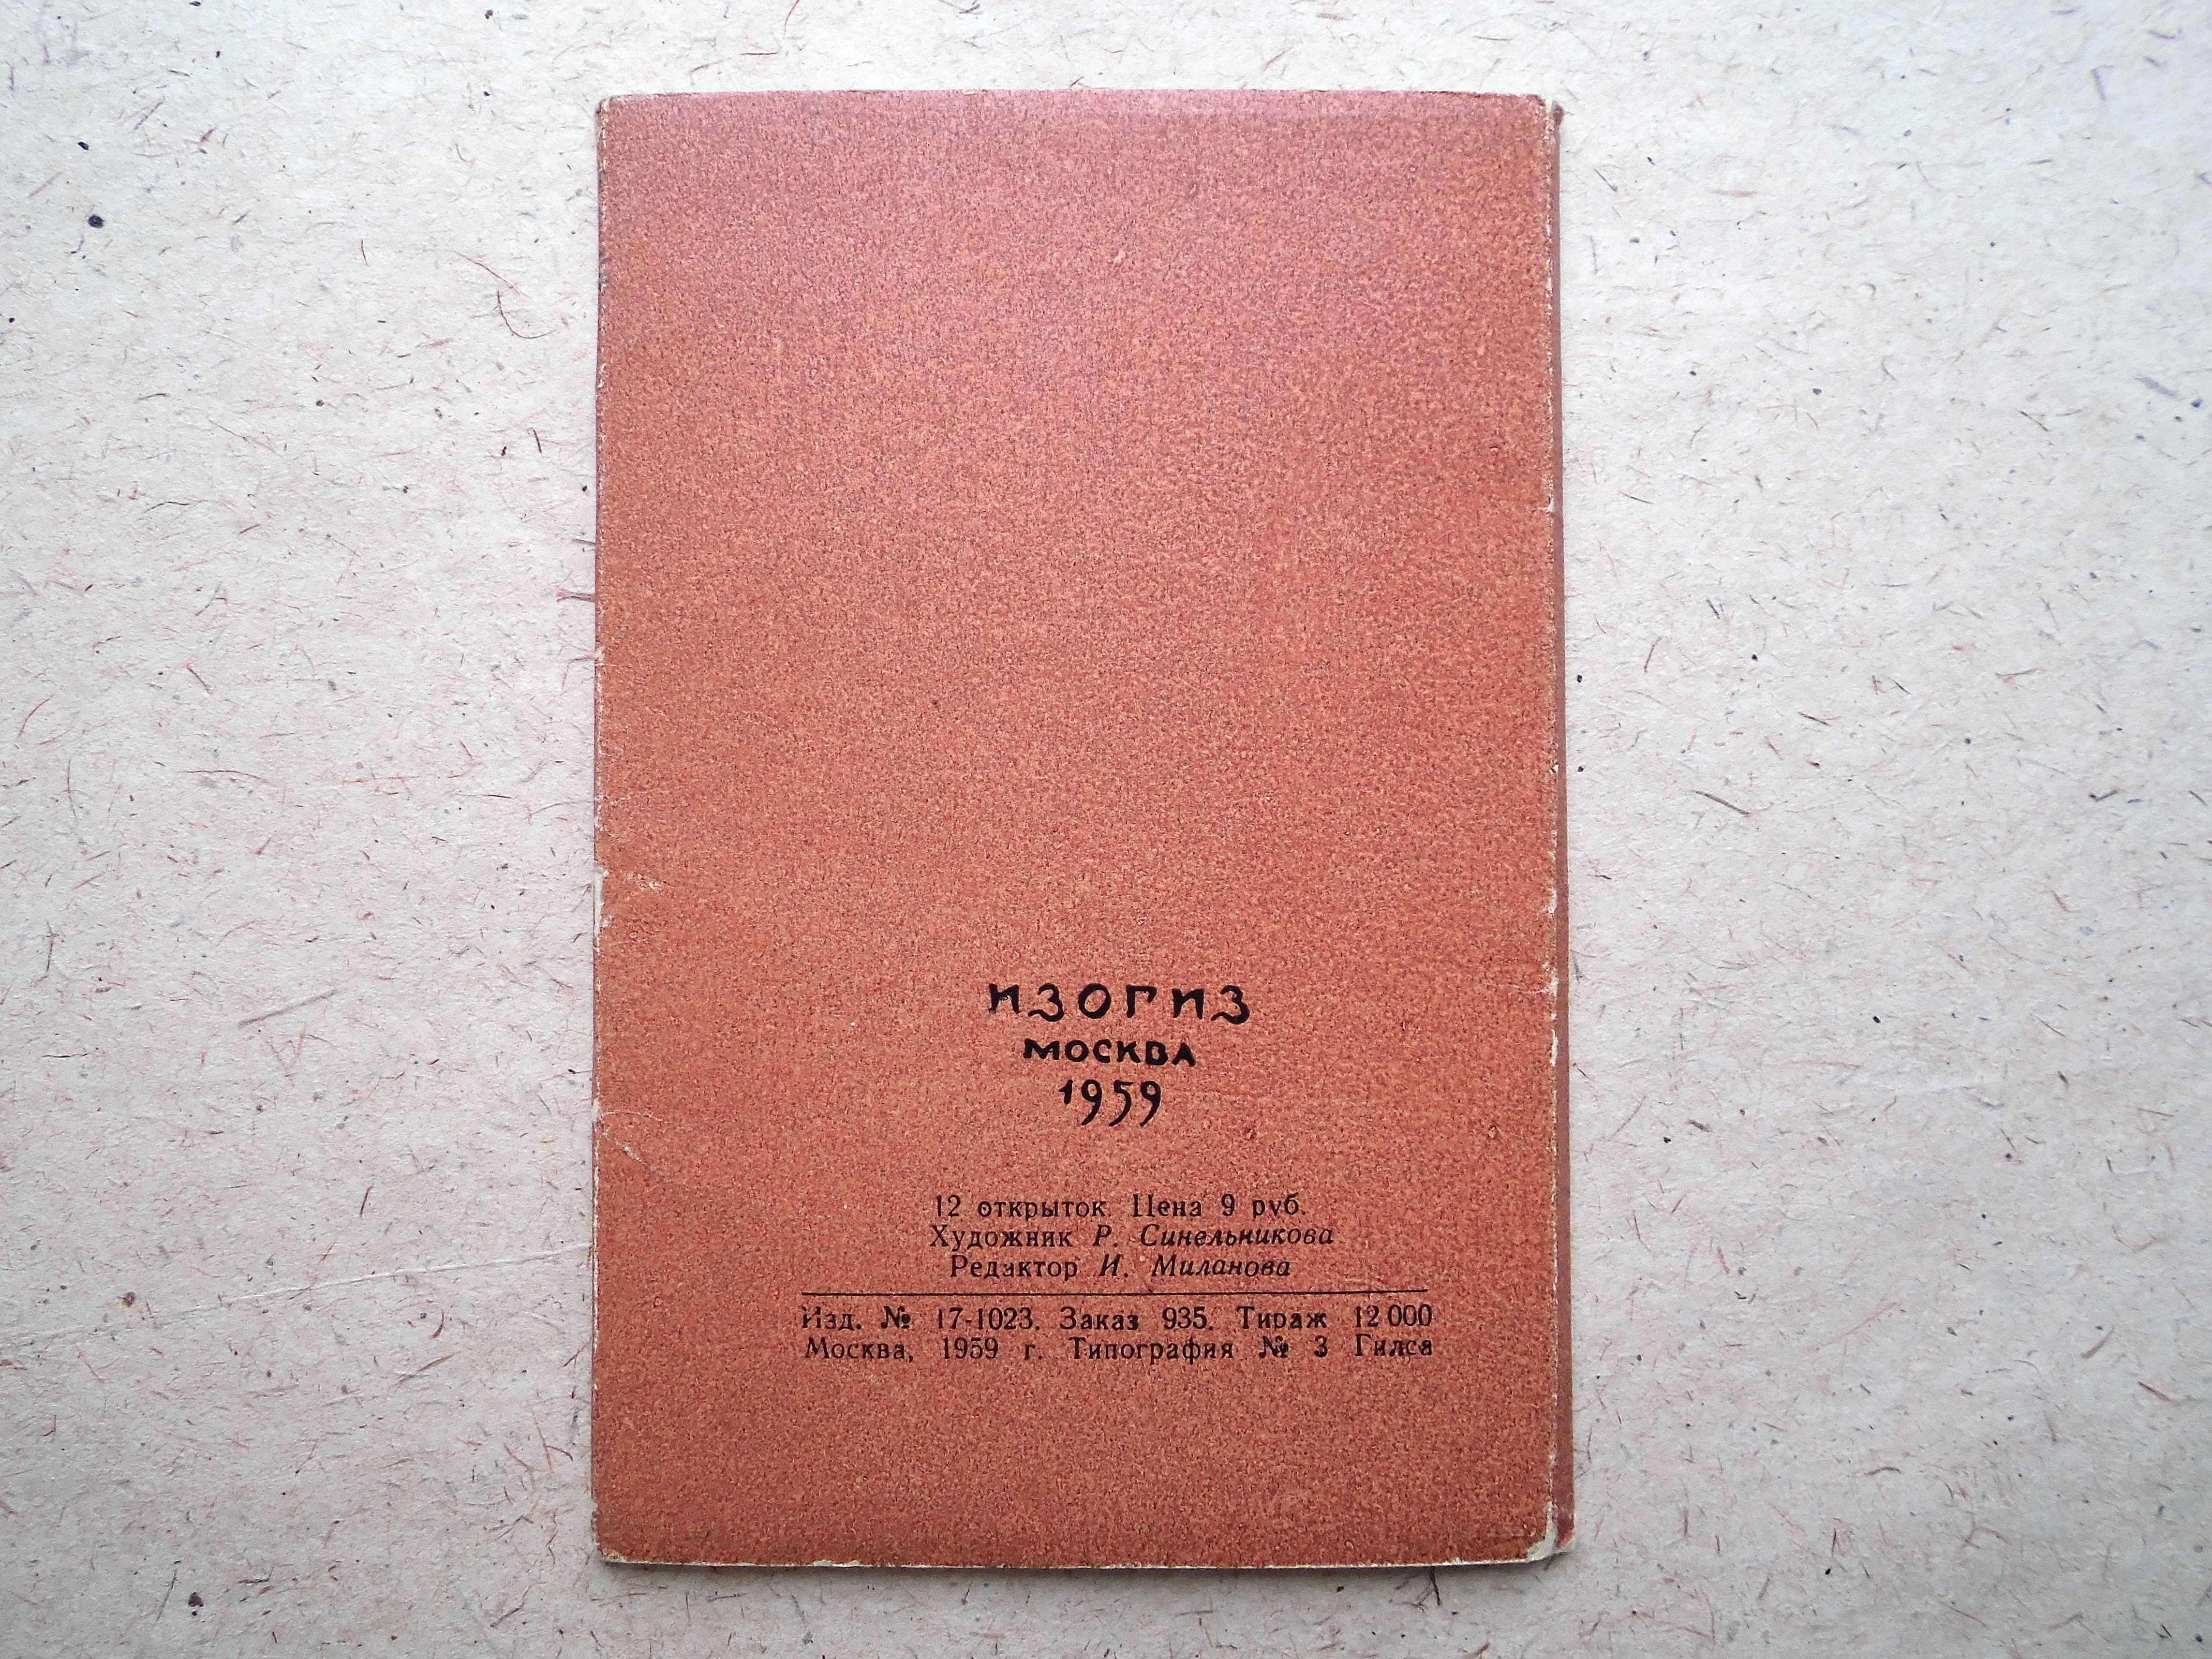 Комплект открыток Государственная Третьяковская галерея